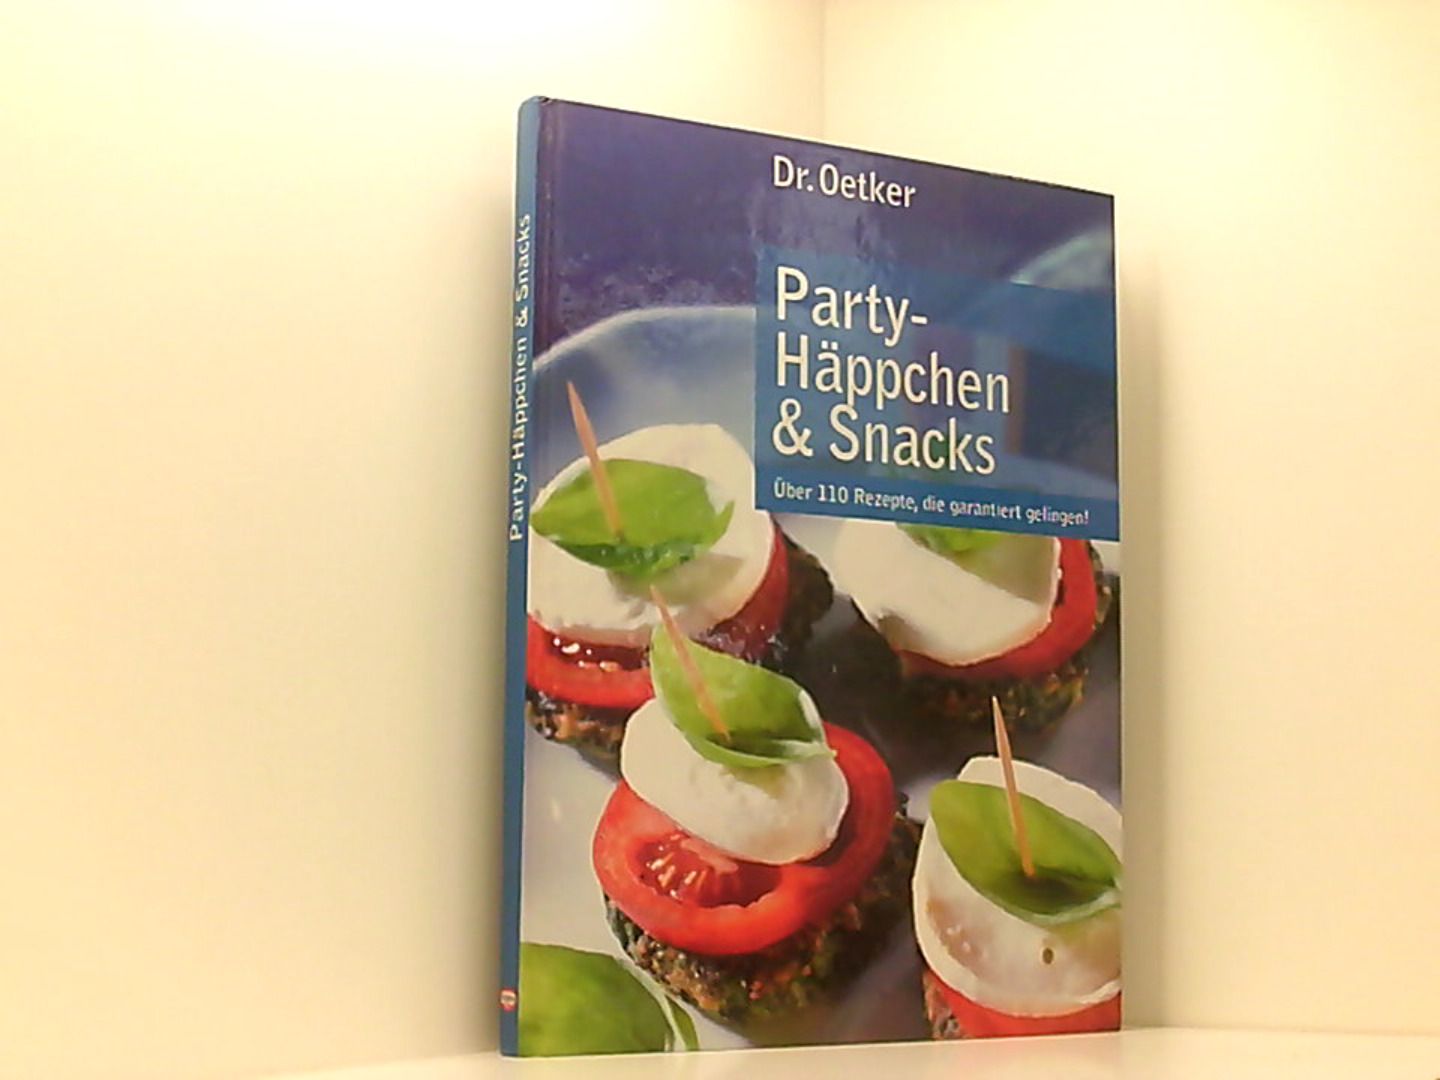 Party-Häppchen & Snacks (über 110 Rezepte, die garantiert gelingen!) - Oetker, Dr.